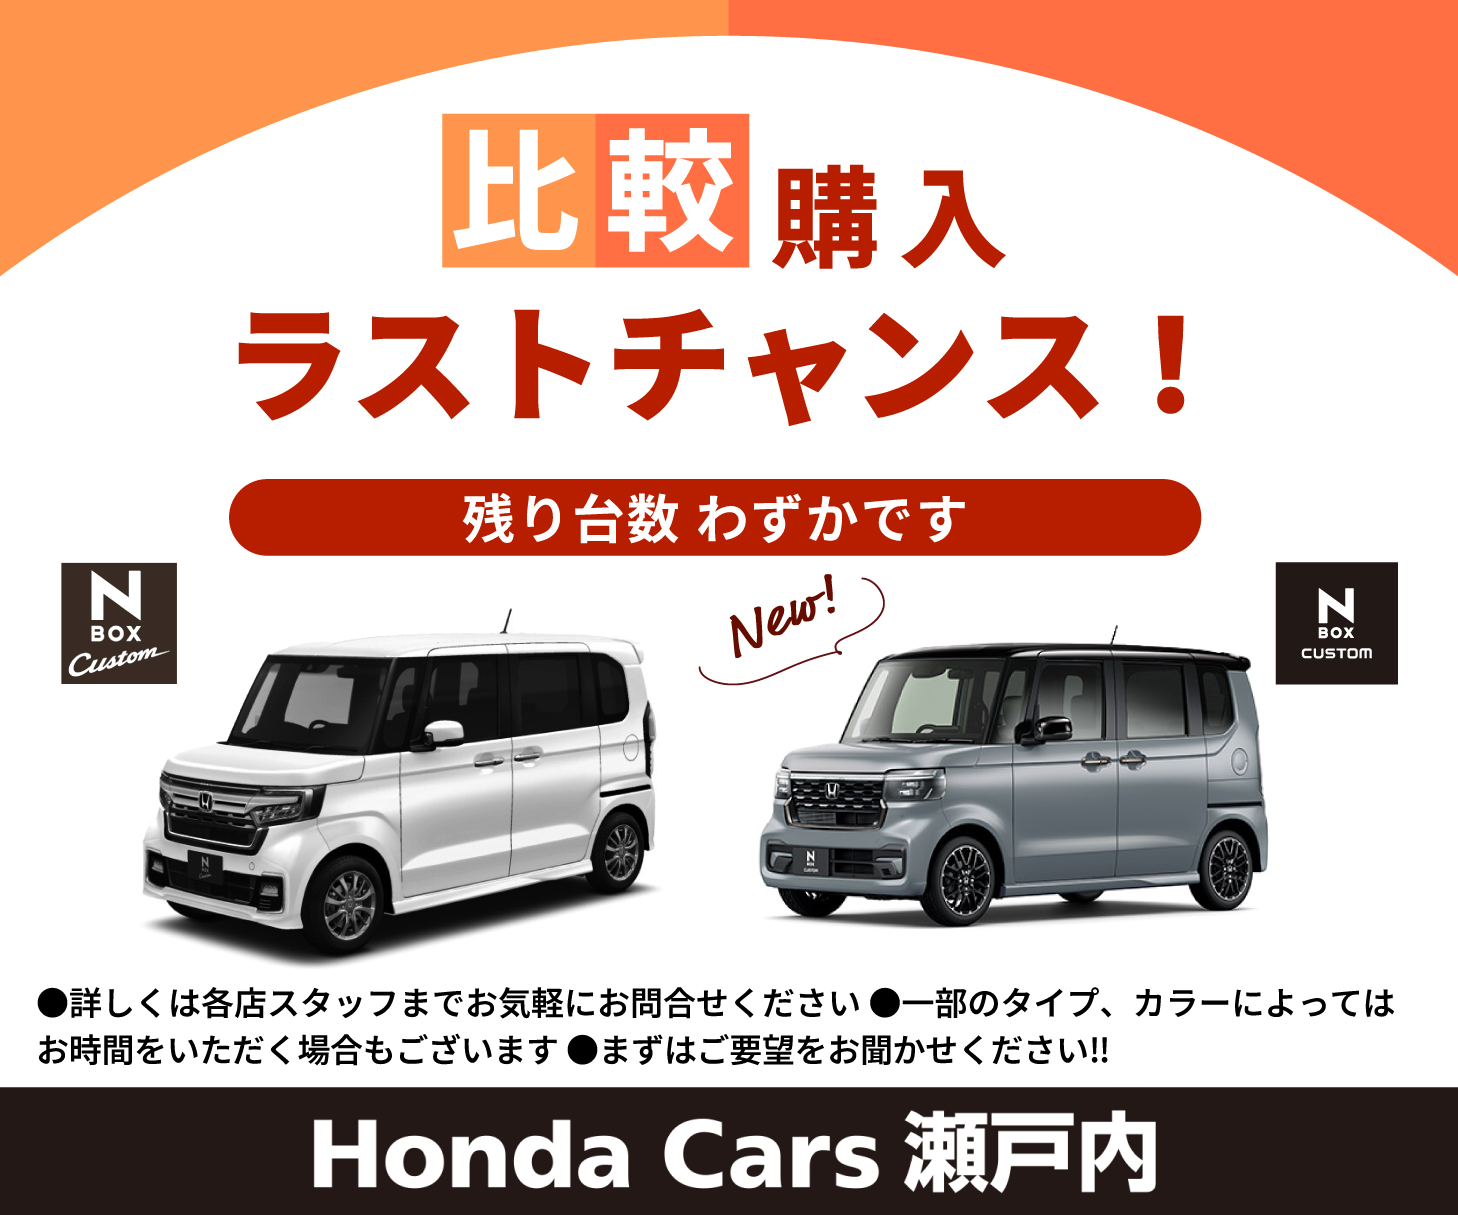 比較購入ラストチャンス！残り台数わずかです  詳しくは各店スタッフまでお気軽にお問い合わせください 一部のタイプ、カラーによってはお時間をいただく場合もございます まずはご要望をお聞かせください!! N-BOX Custom 新型N-BOX Custom New! Honda Cars 瀬戸内